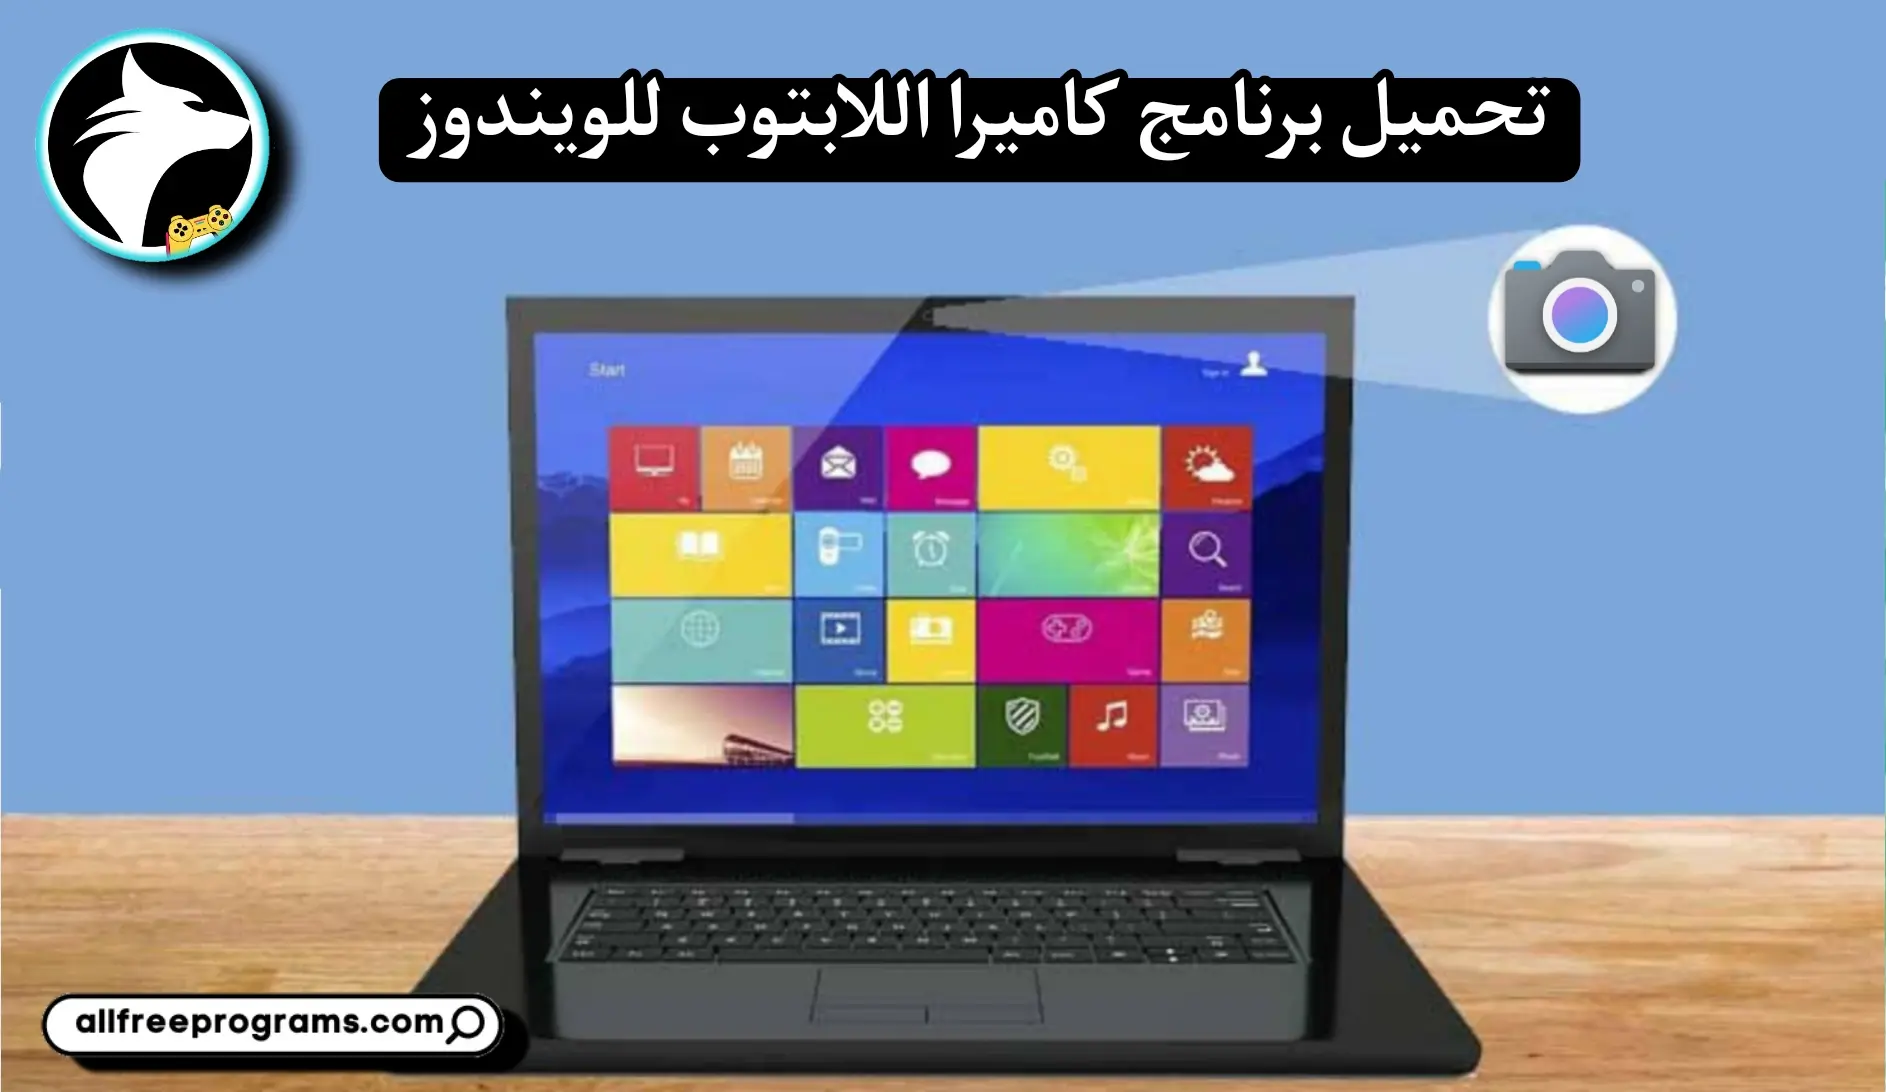 تحميل برنامج كاميرا للكمبيوتر عربي مجانا